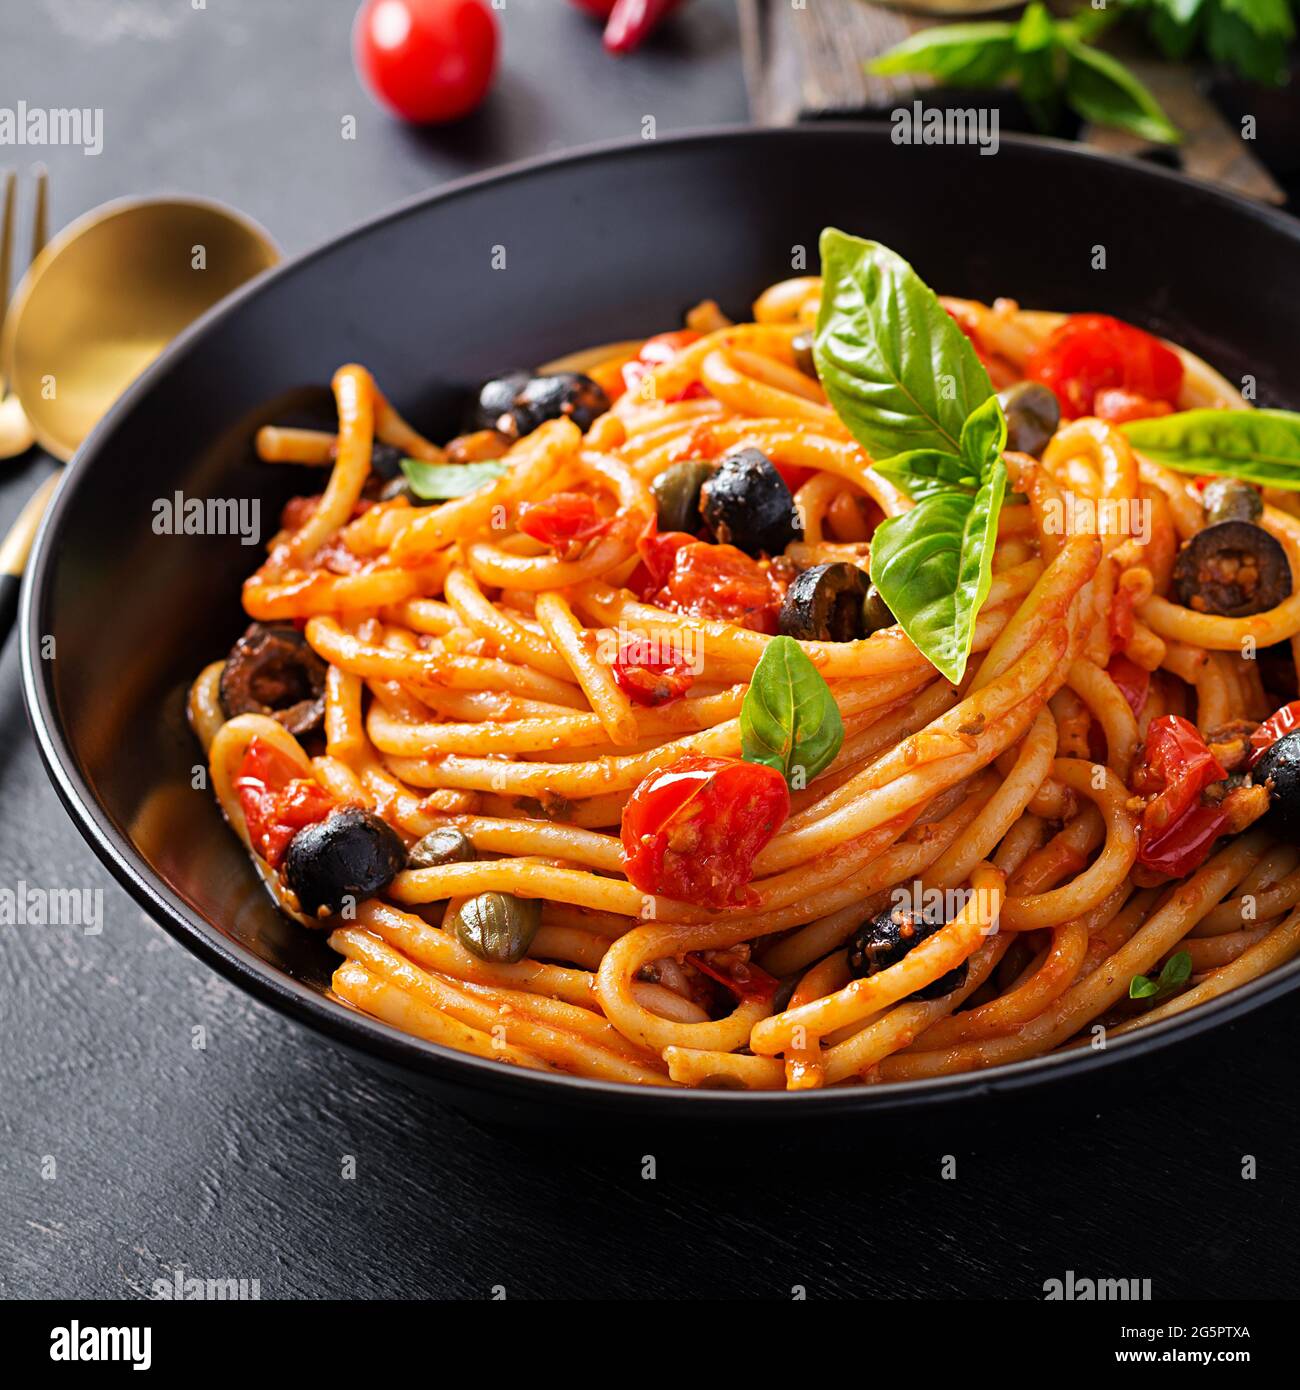 Spaghetti alla puttanesca – italienische Pasta-Gericht mit Tomaten, schwarzen Oliven, Kapern, Sardellen und Basilikum. Stockfoto